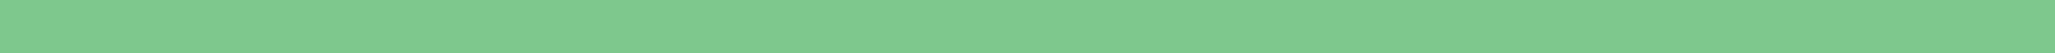 light green divider _ehl-1